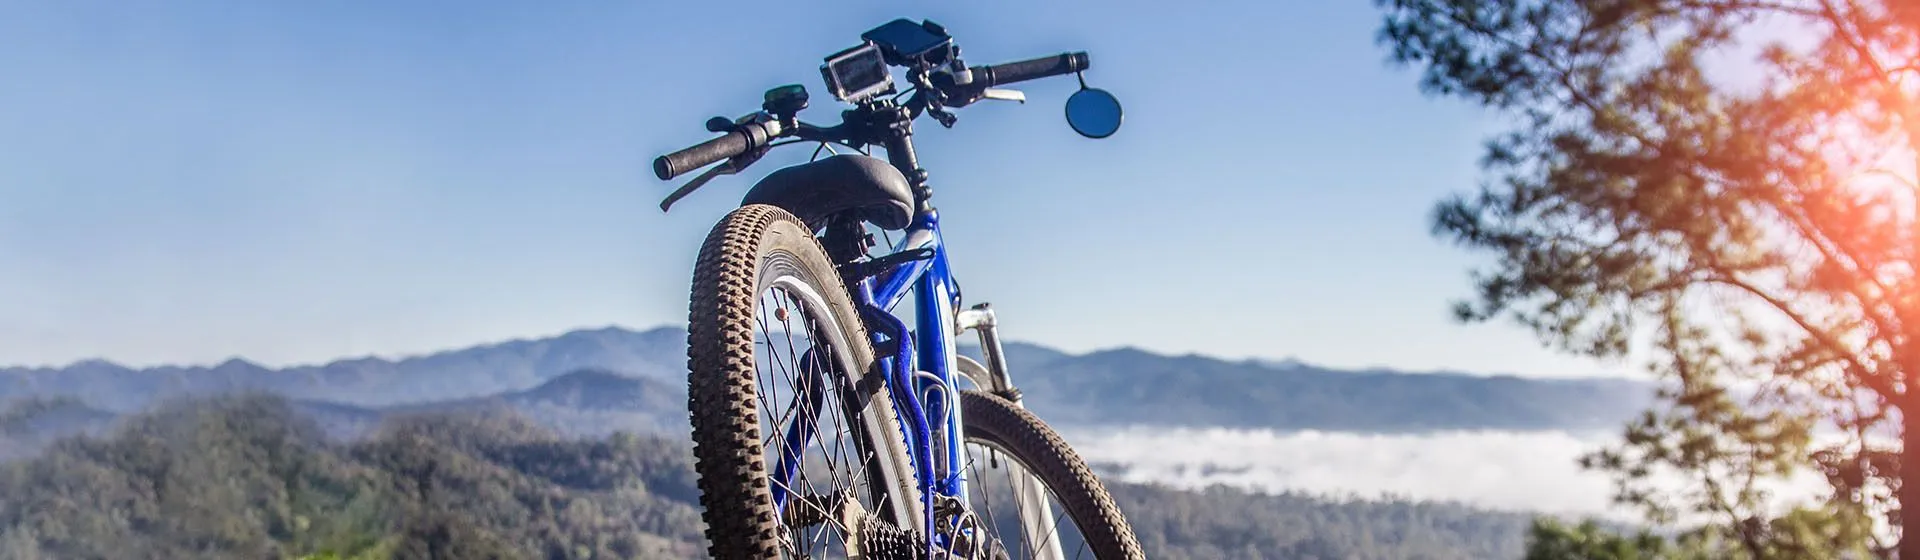 Bicicleta azul estacionada com paisagem de montanhas atrás